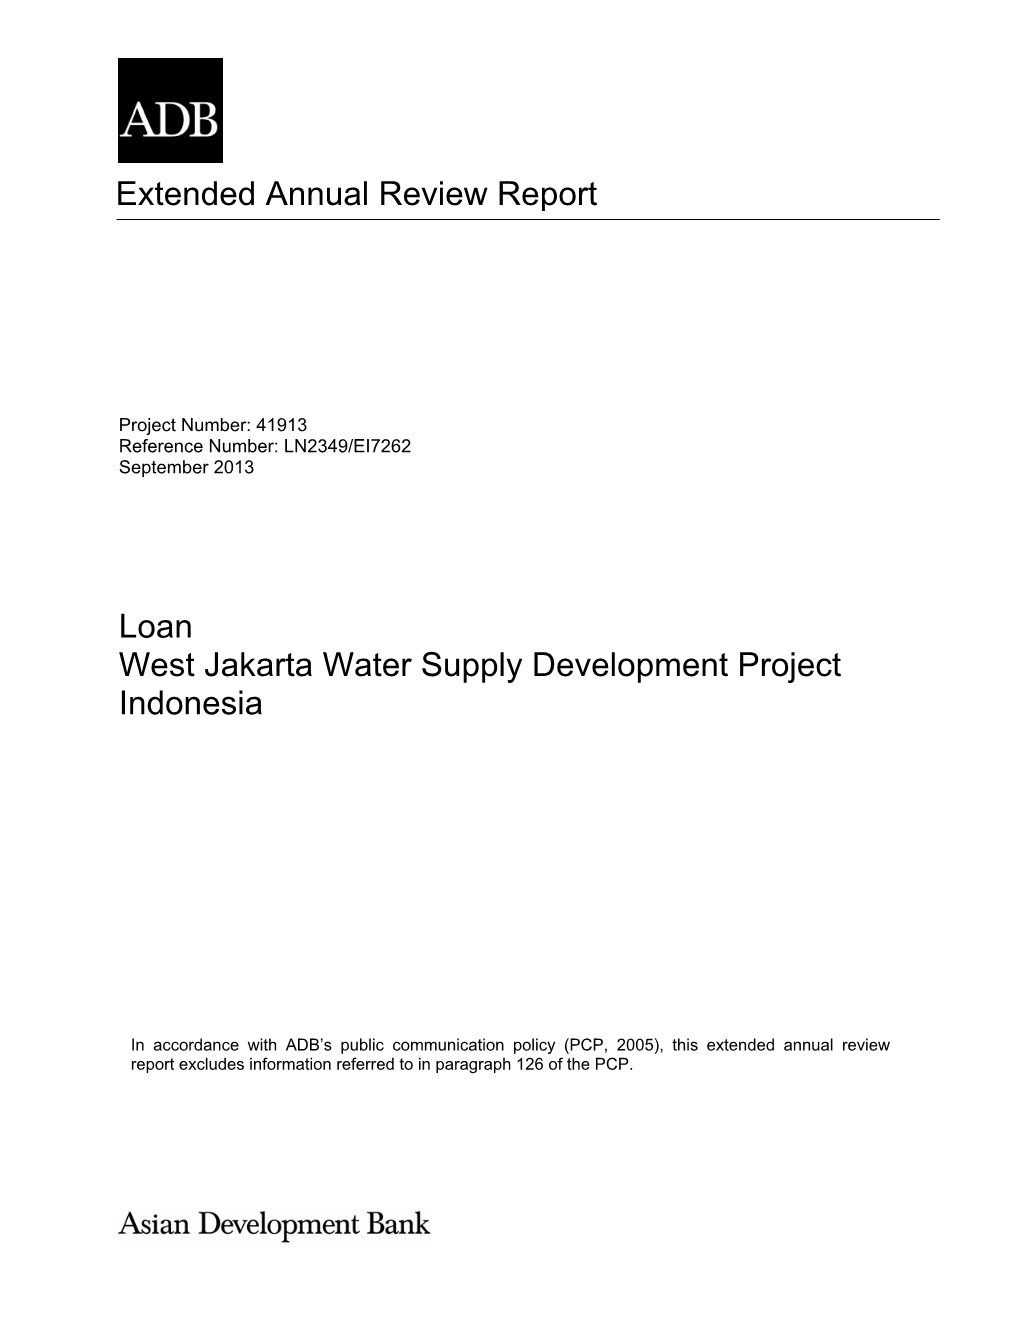 41913-014: West Jakarta Water Supply Development Project